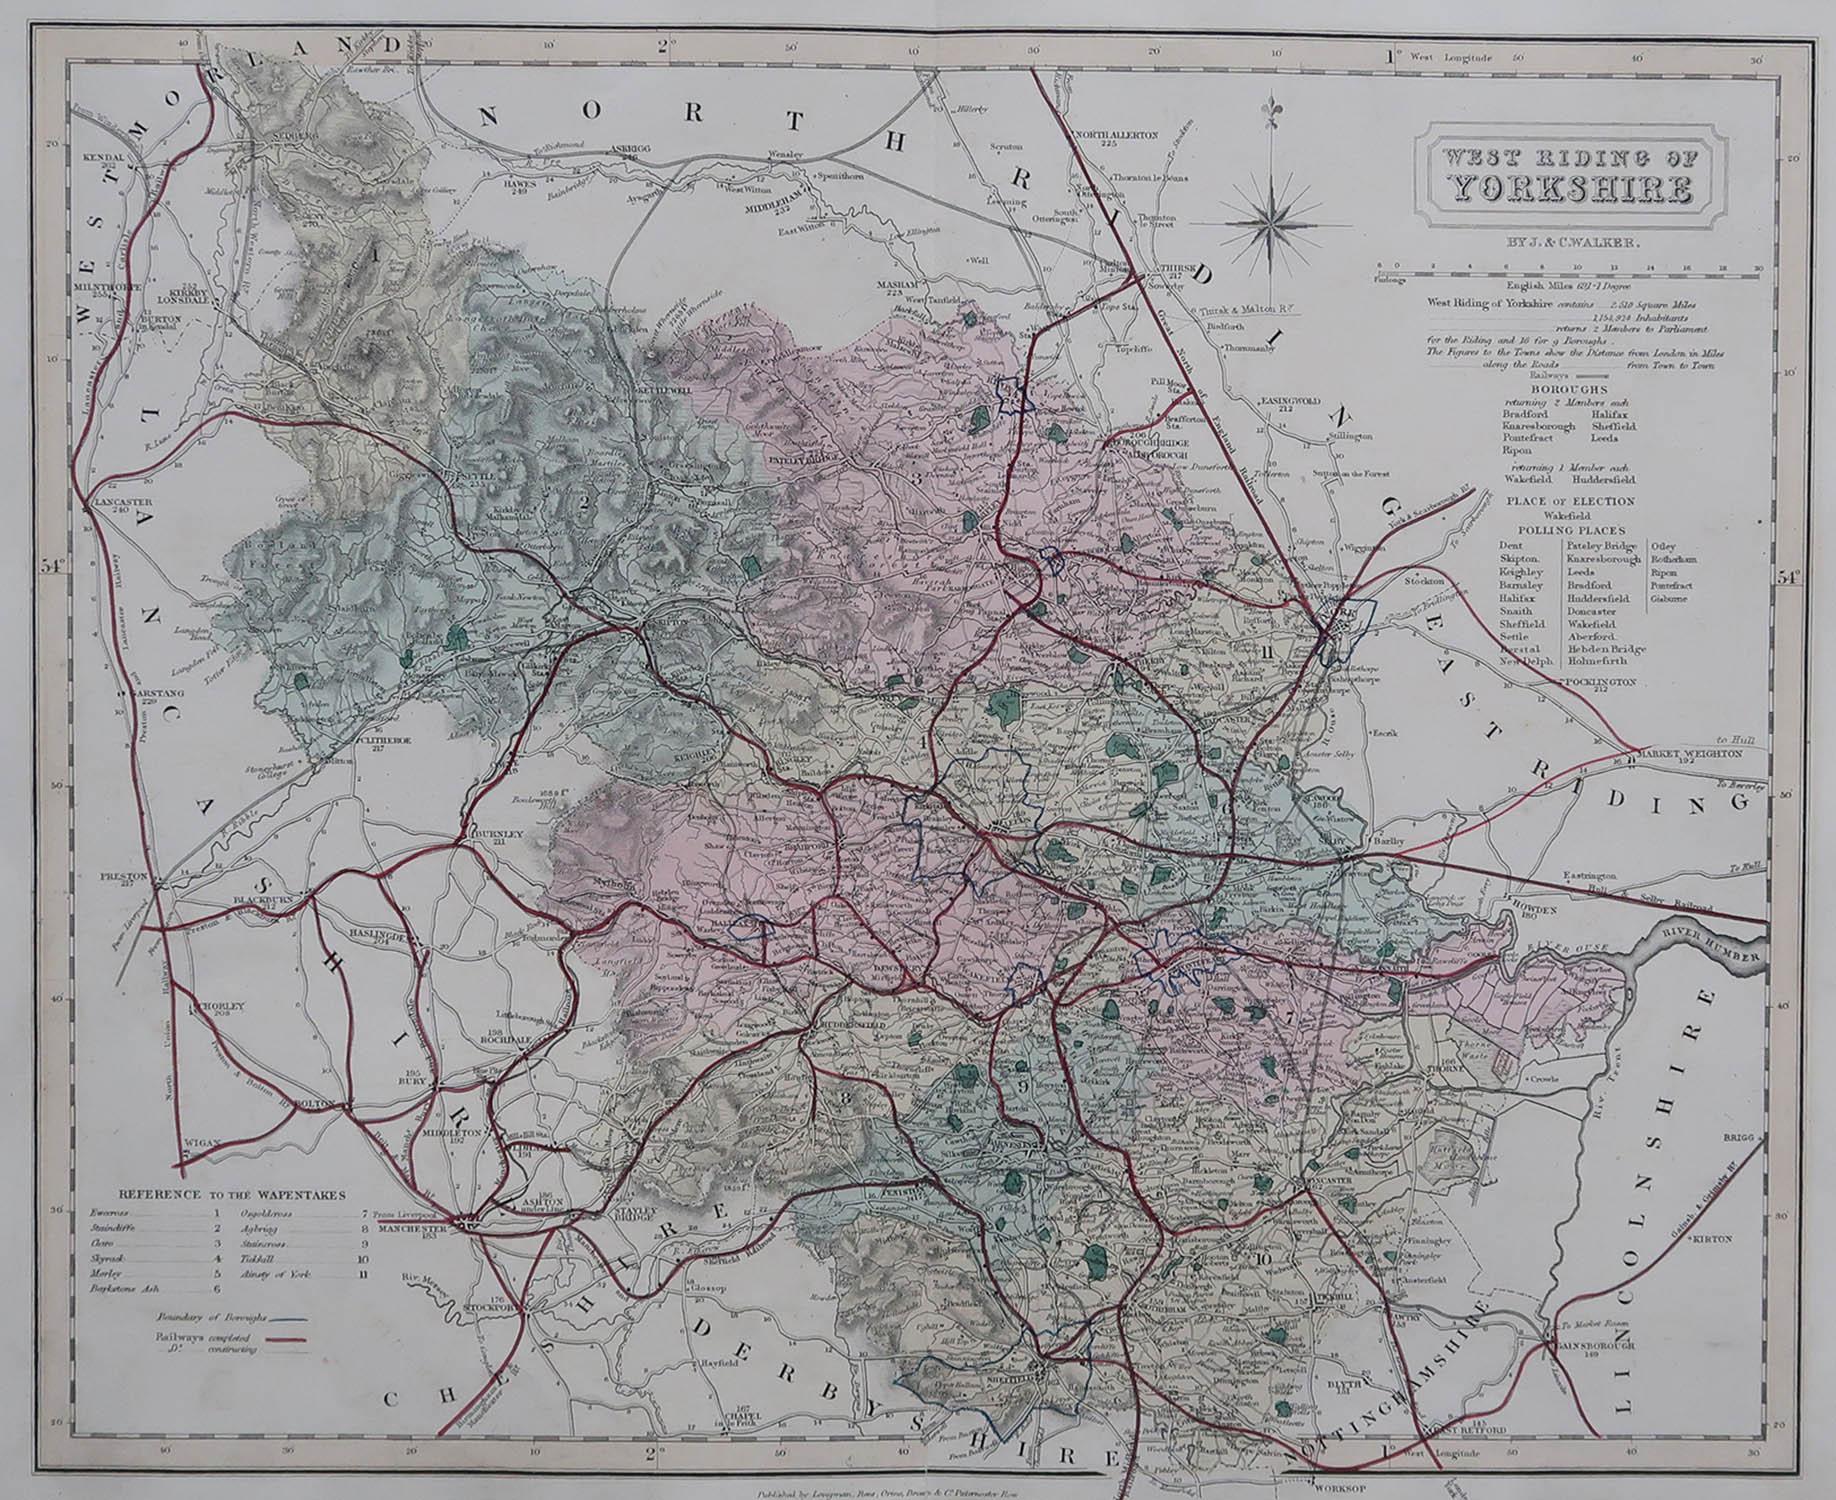 Grande carte du West Riding of Yorkshire

Couleur originale

Par A.I.C. Walker

Publié par Longman, Rees, Orme, Brown & Co. 1851

Non encadré.




